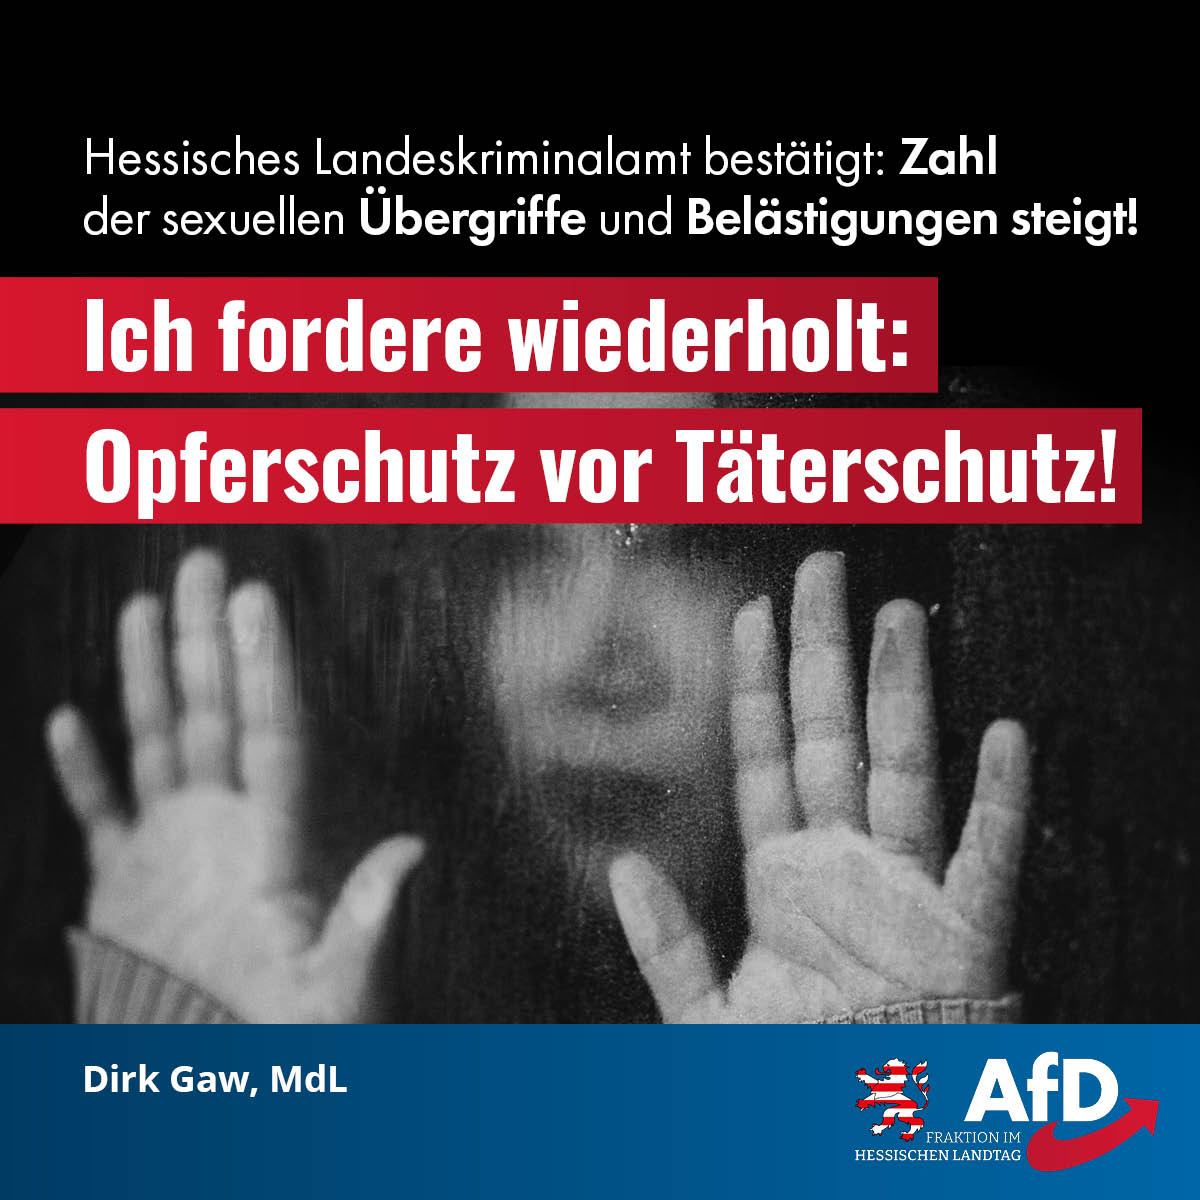 You are currently viewing Hessisches Landeskriminalamt bestätigt: Zahl der sexuellen Übergriffe und Belästigungen steigt!